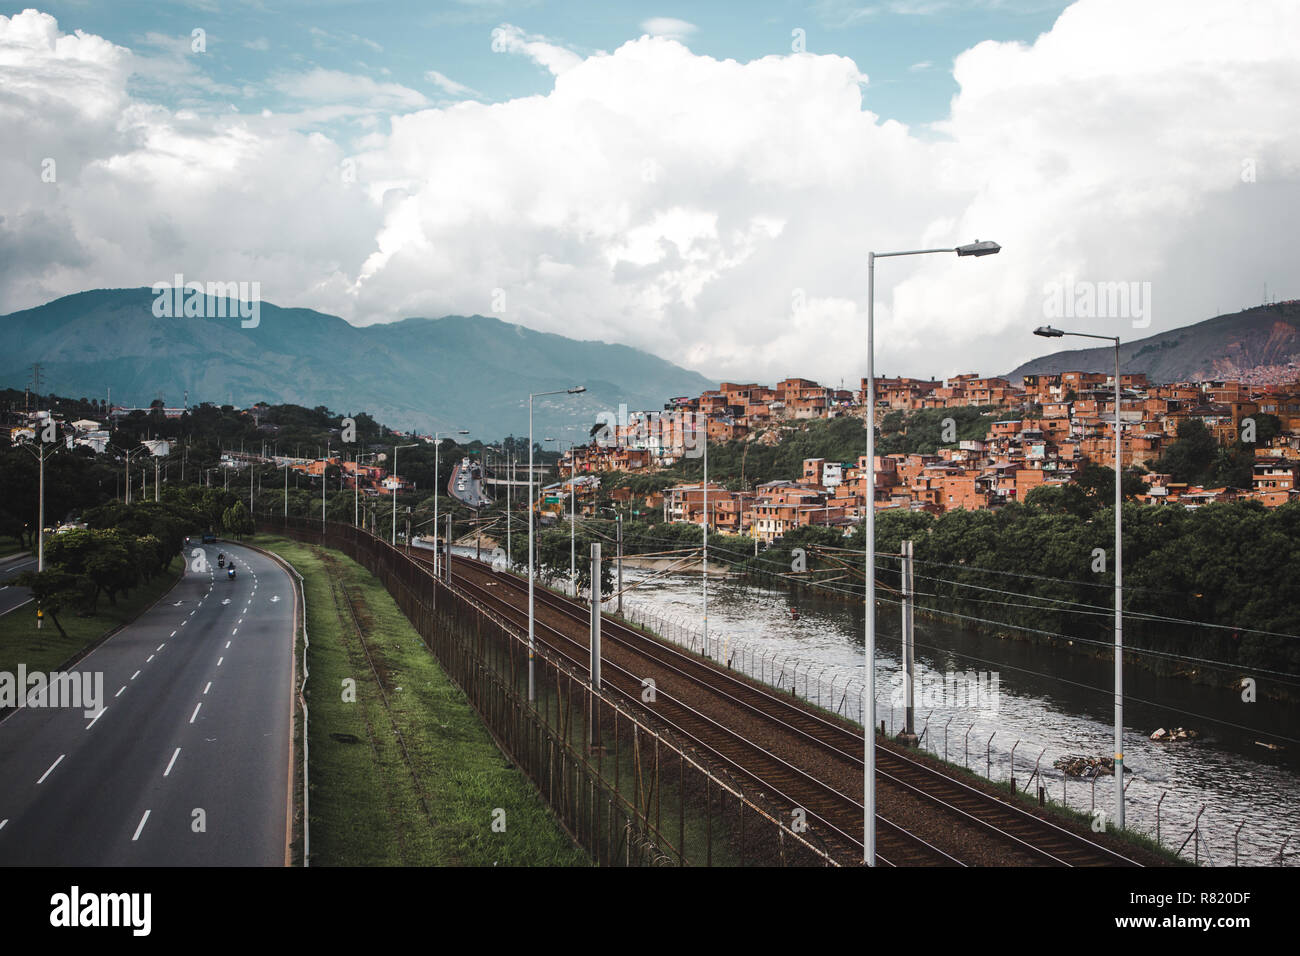 L'Autoroute, Rivière et chemin de fer dans la luxuriante ville vallonnée de Medellín, Colombie, avec la red maisons de barrios construit dans les collines Banque D'Images